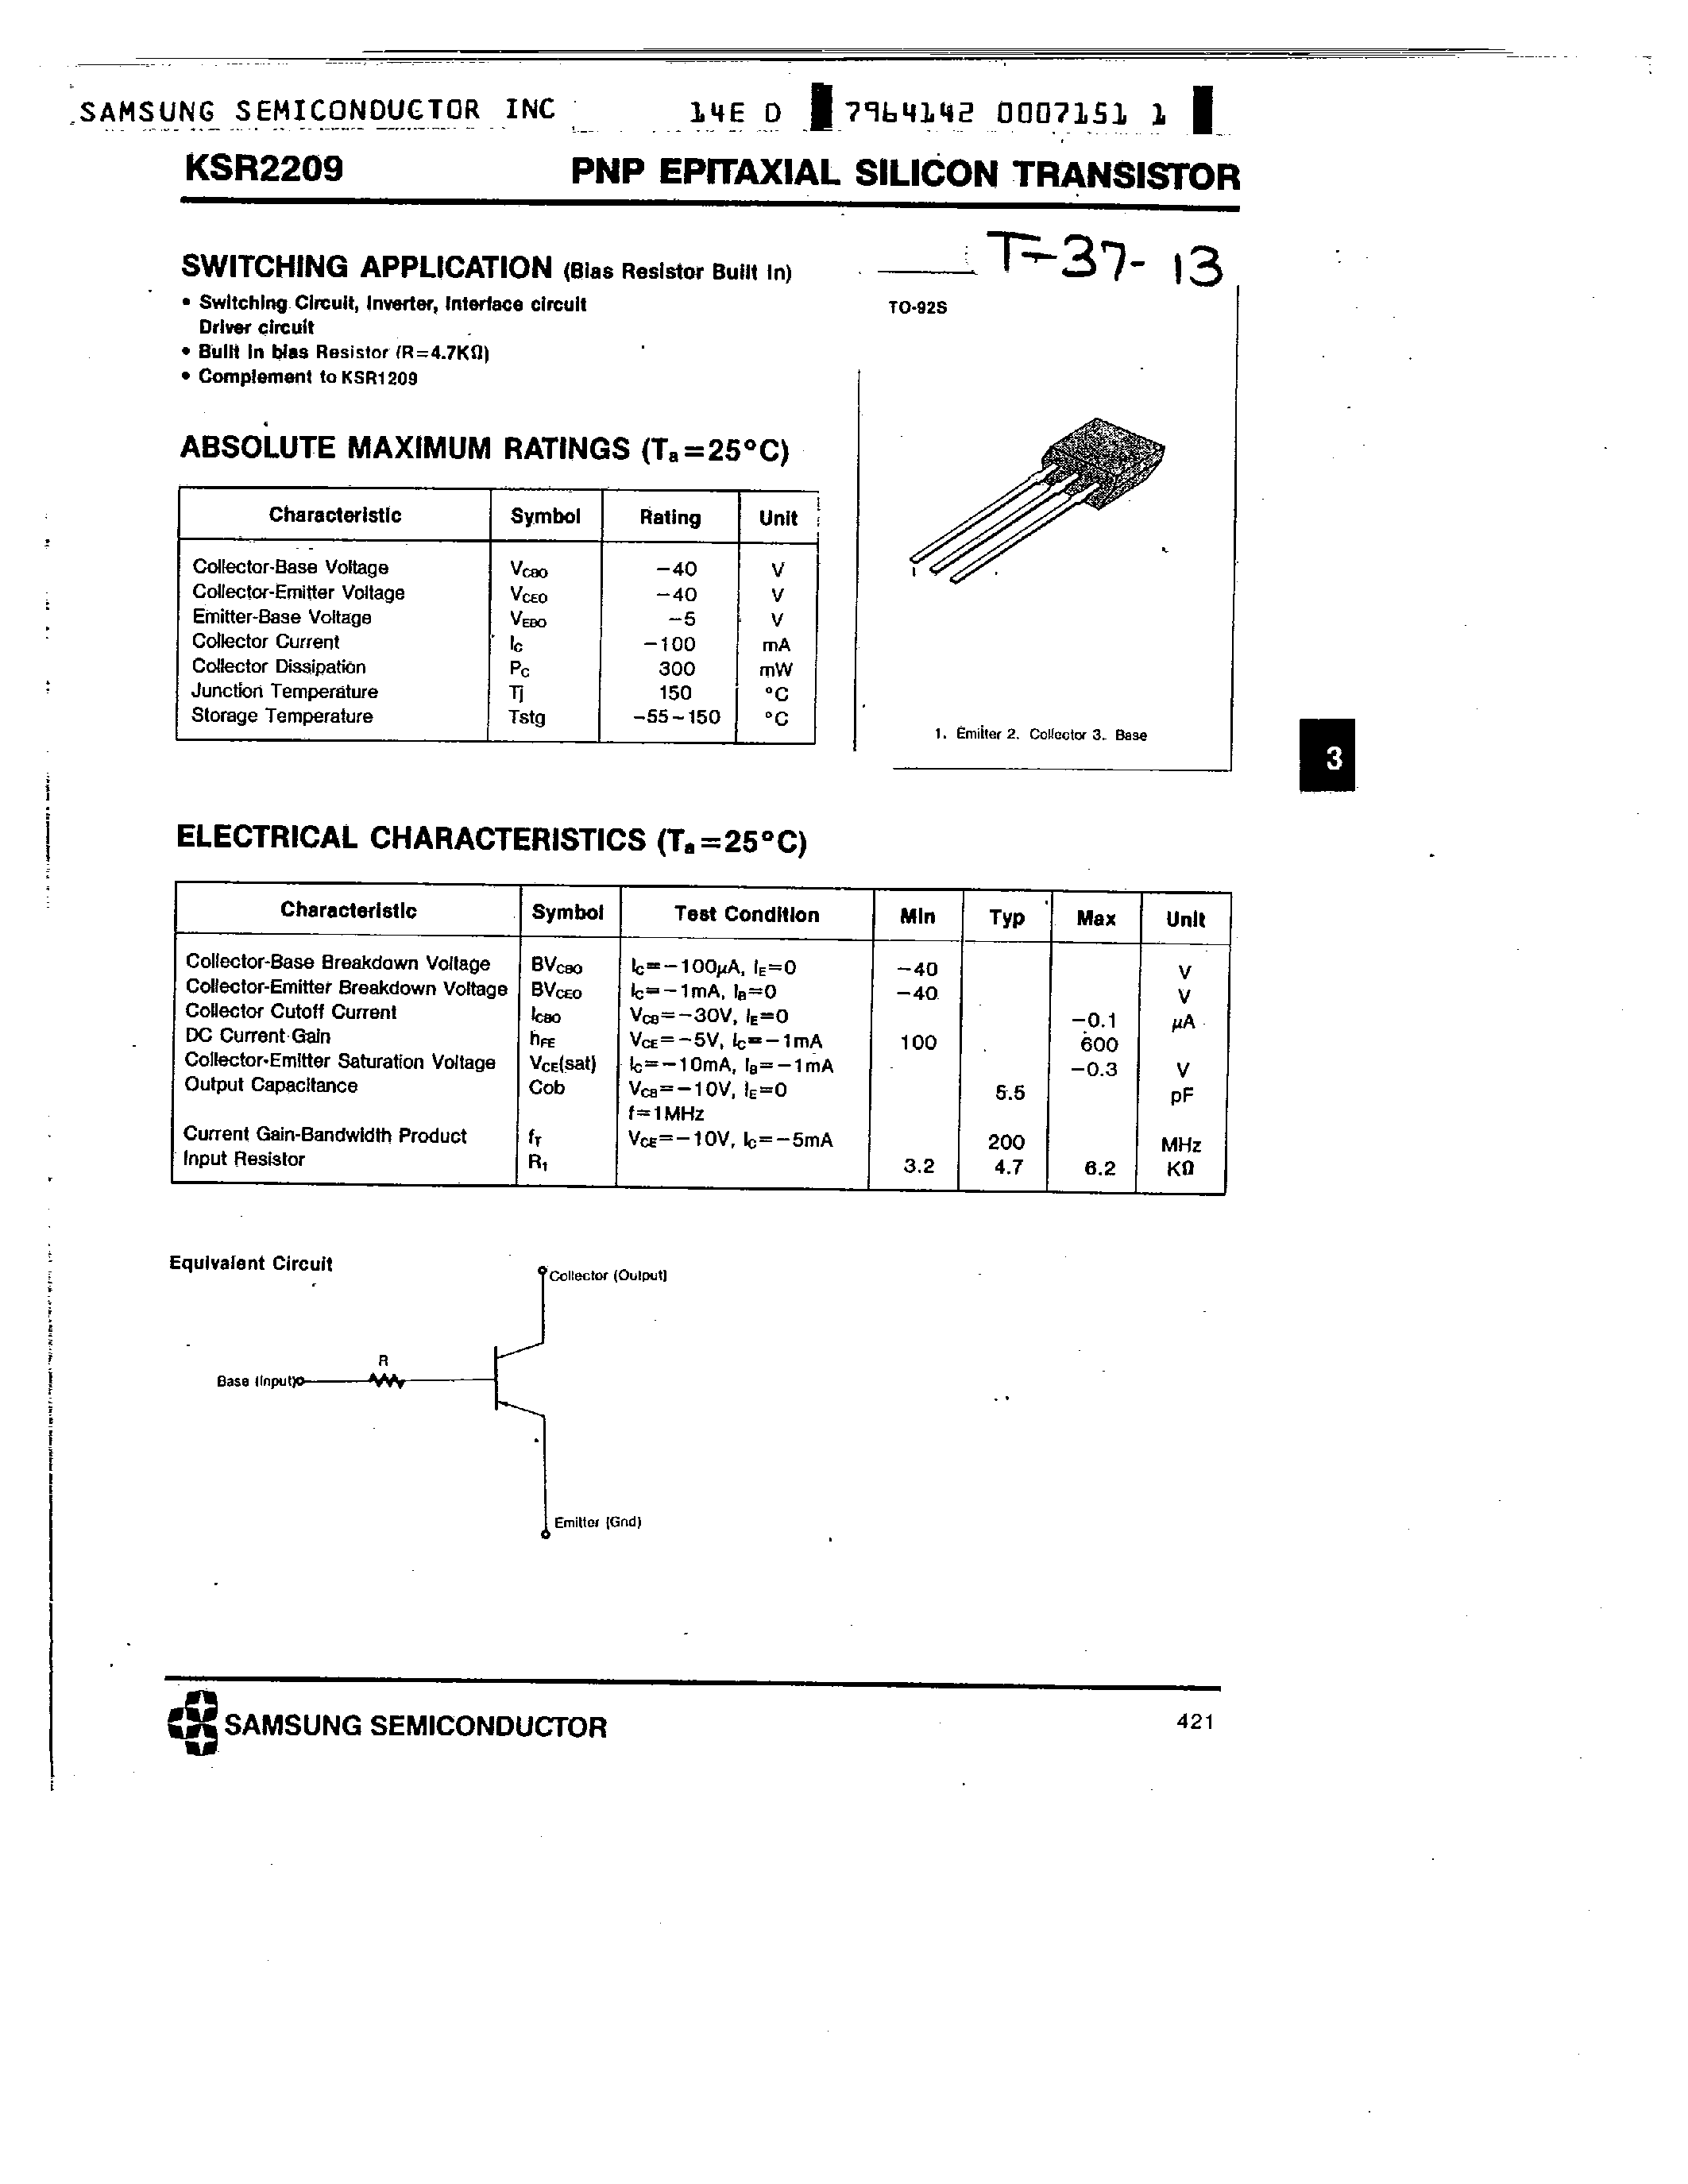 Datasheet KSR2209 - PNP (SWITCHING APPLICATION) page 1